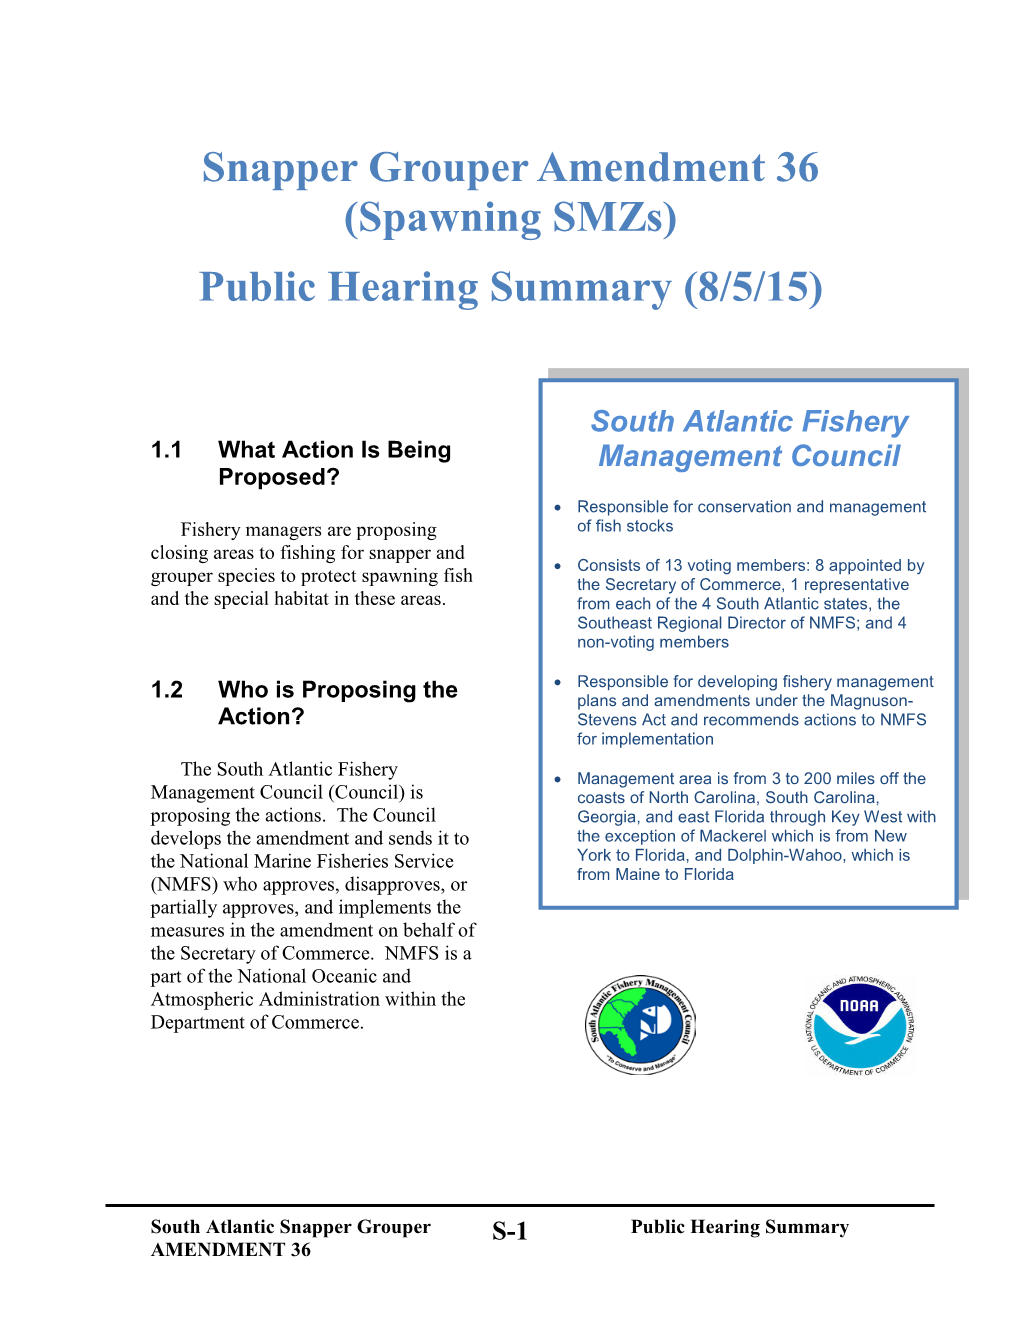 Spawning Smzs) Public Hearing Summary (8/5/15